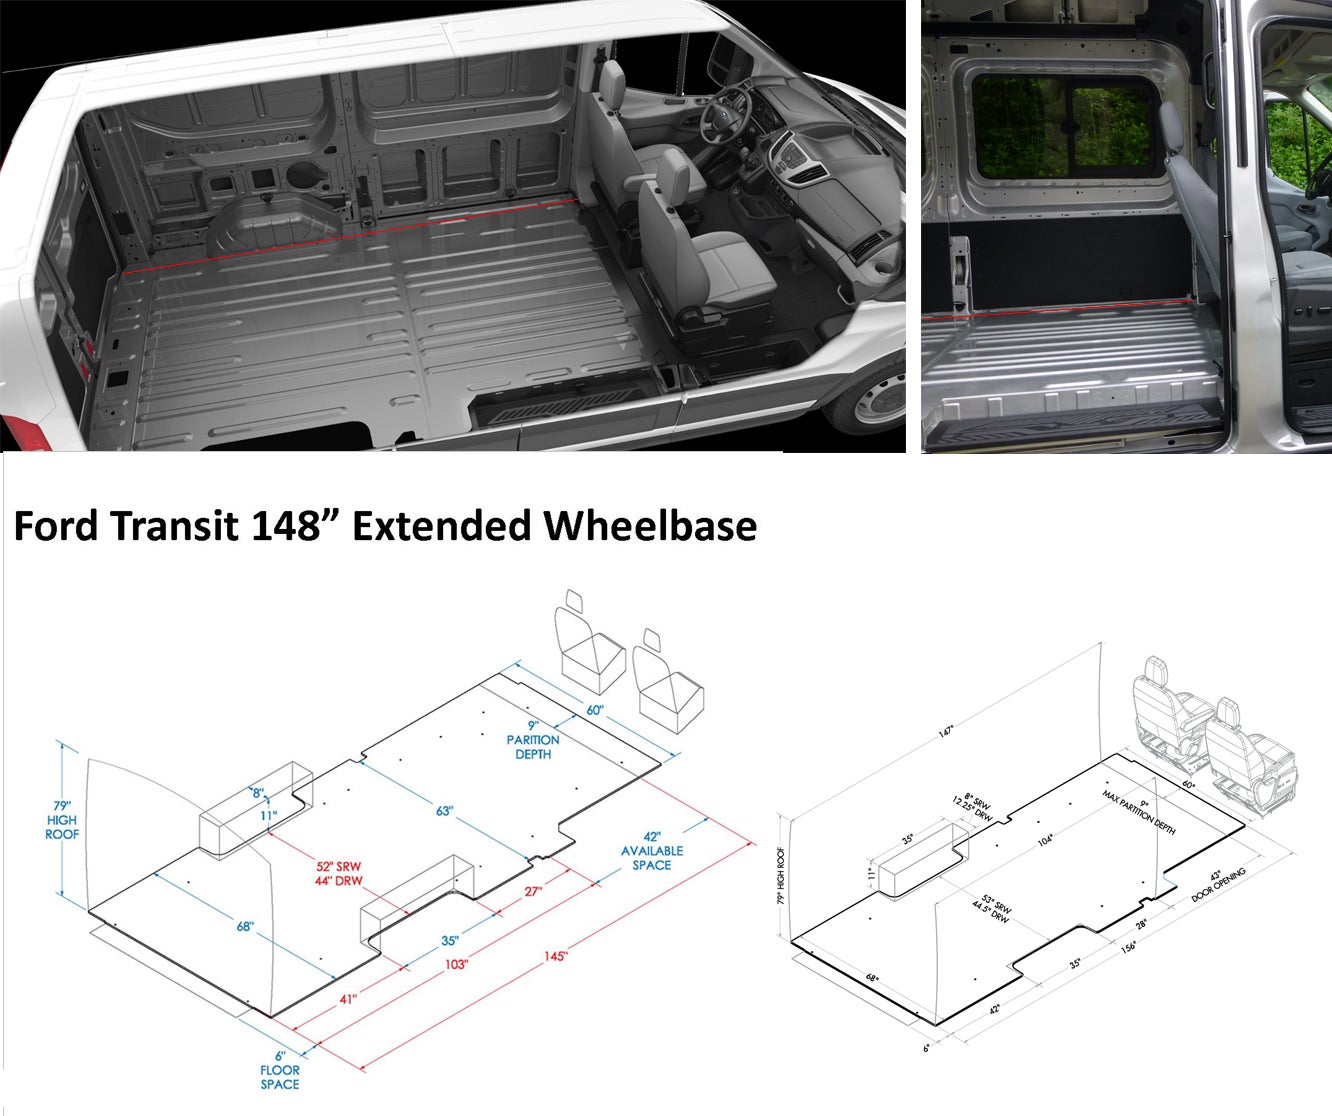 Length of usable cargo area extended wheelbase